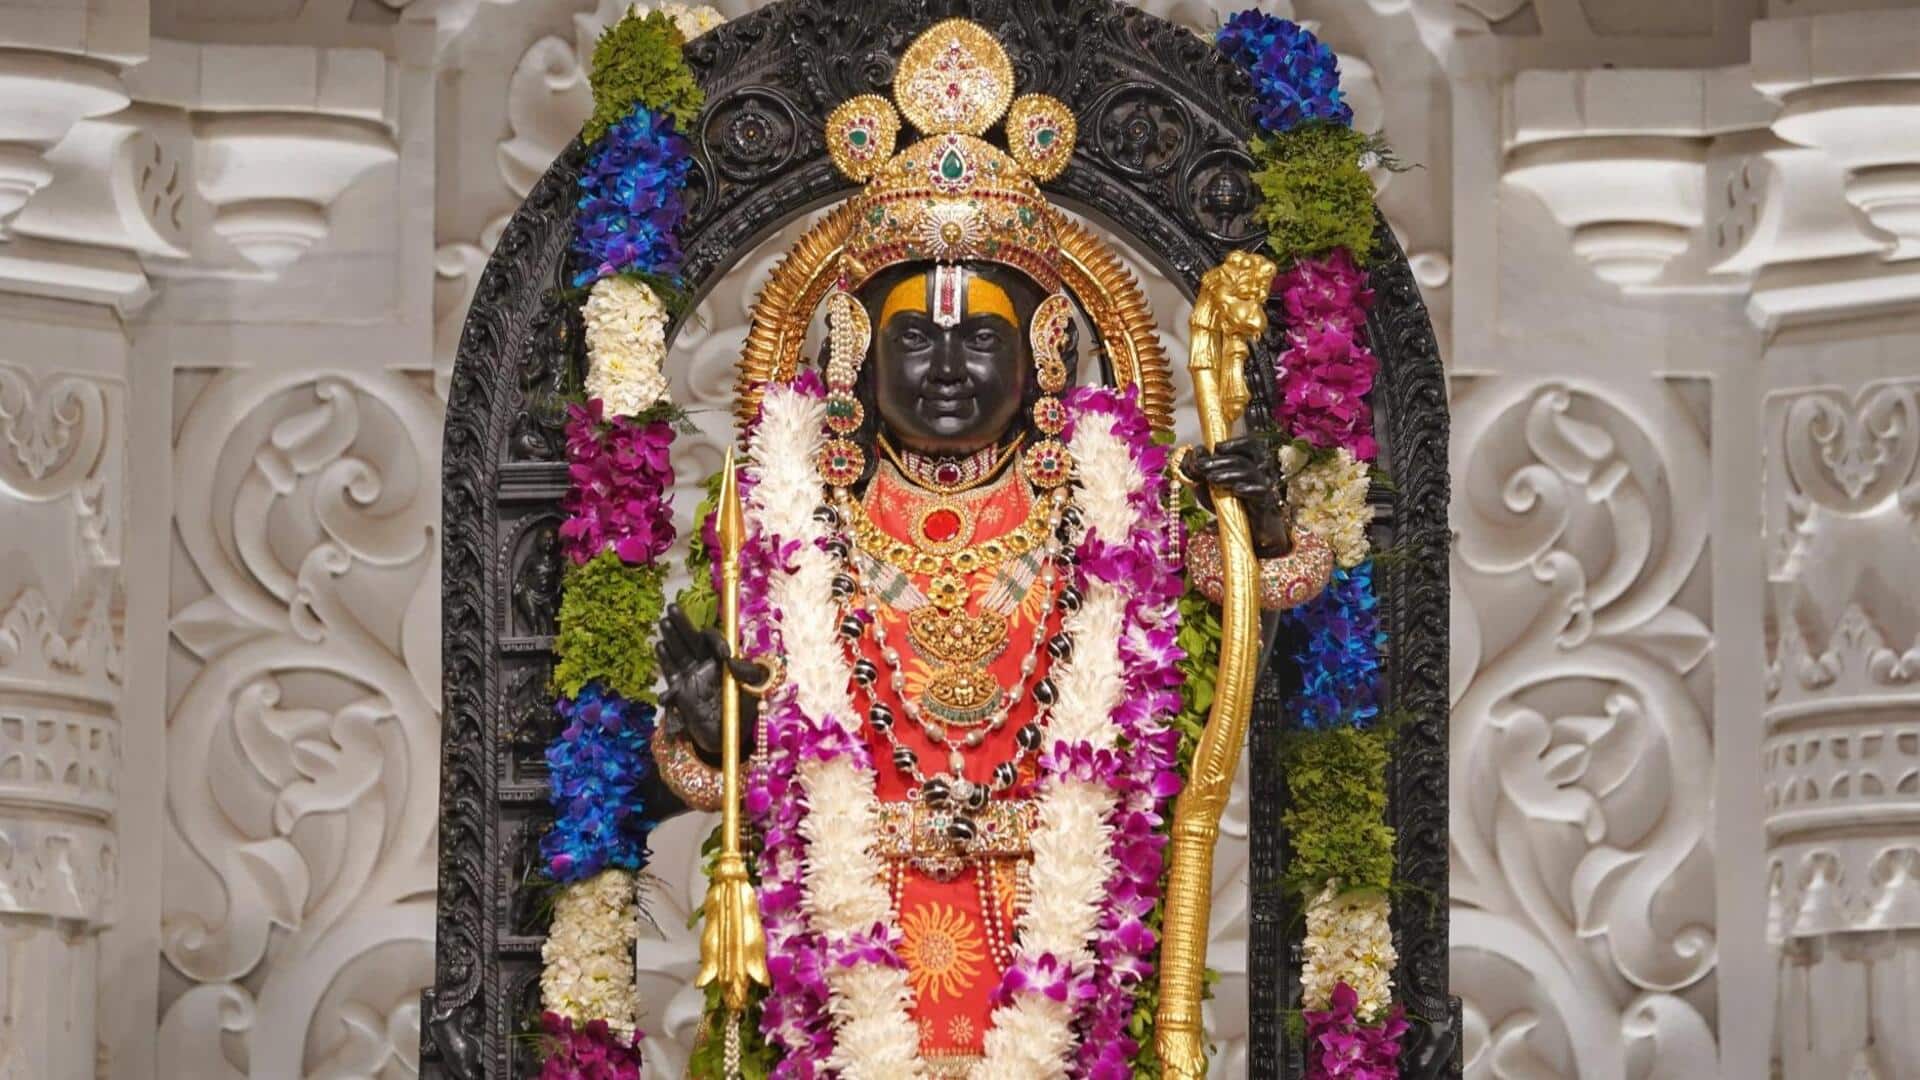 राम मंदिर: रामनवमी के कारण 19 अप्रैल तक विशेष पास की सेवा निरस्त